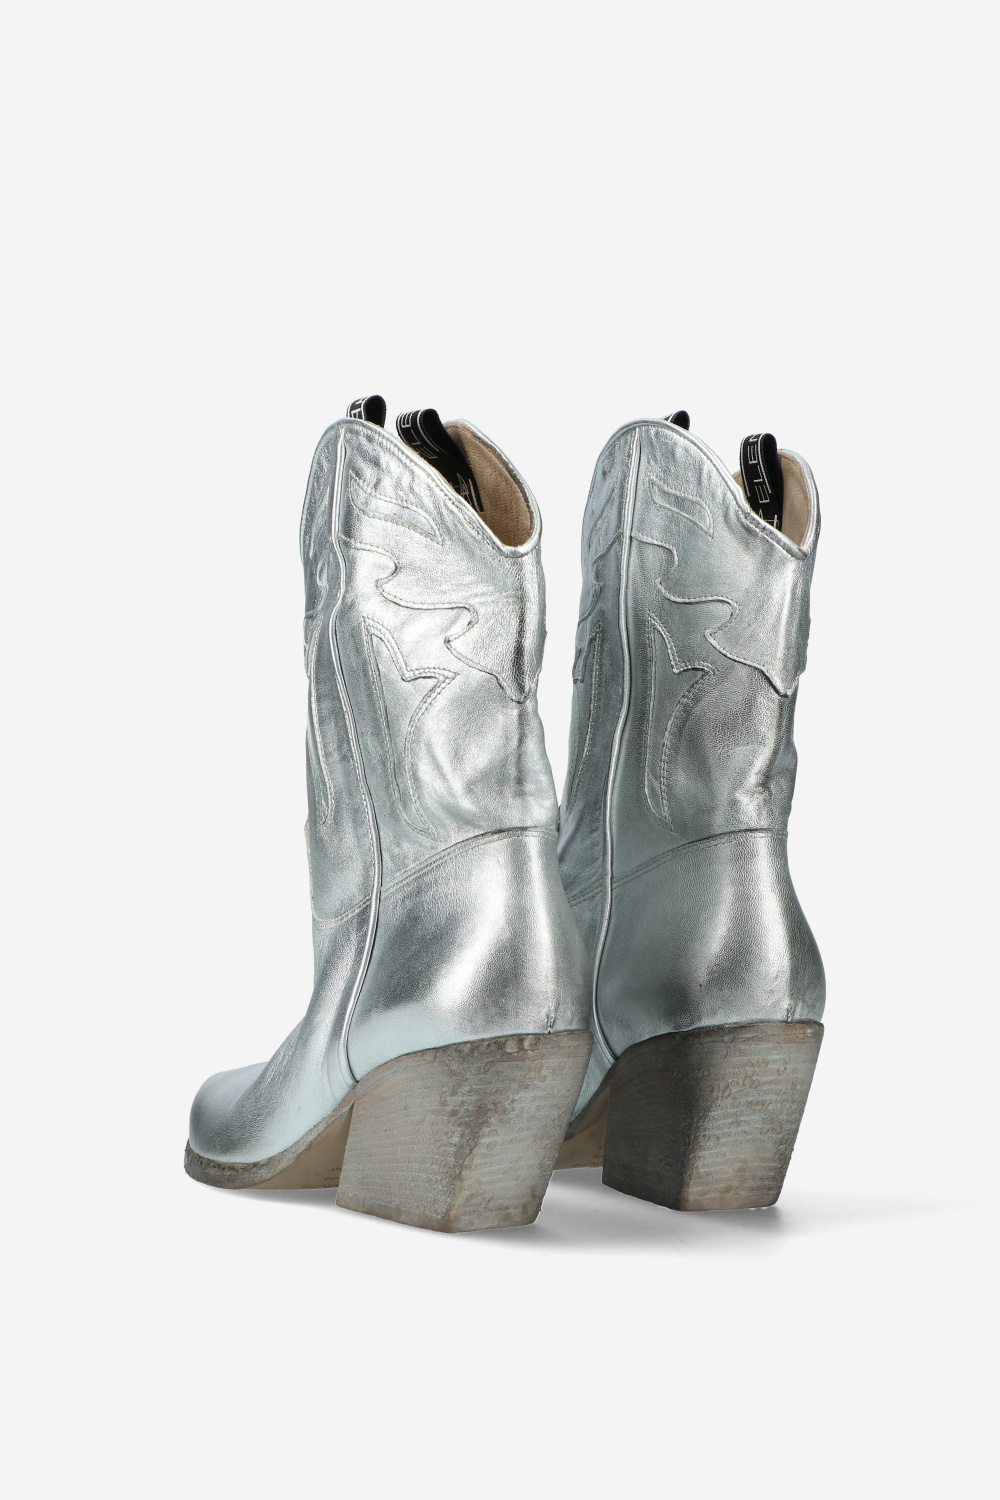 Elena Iachi Boots Silver